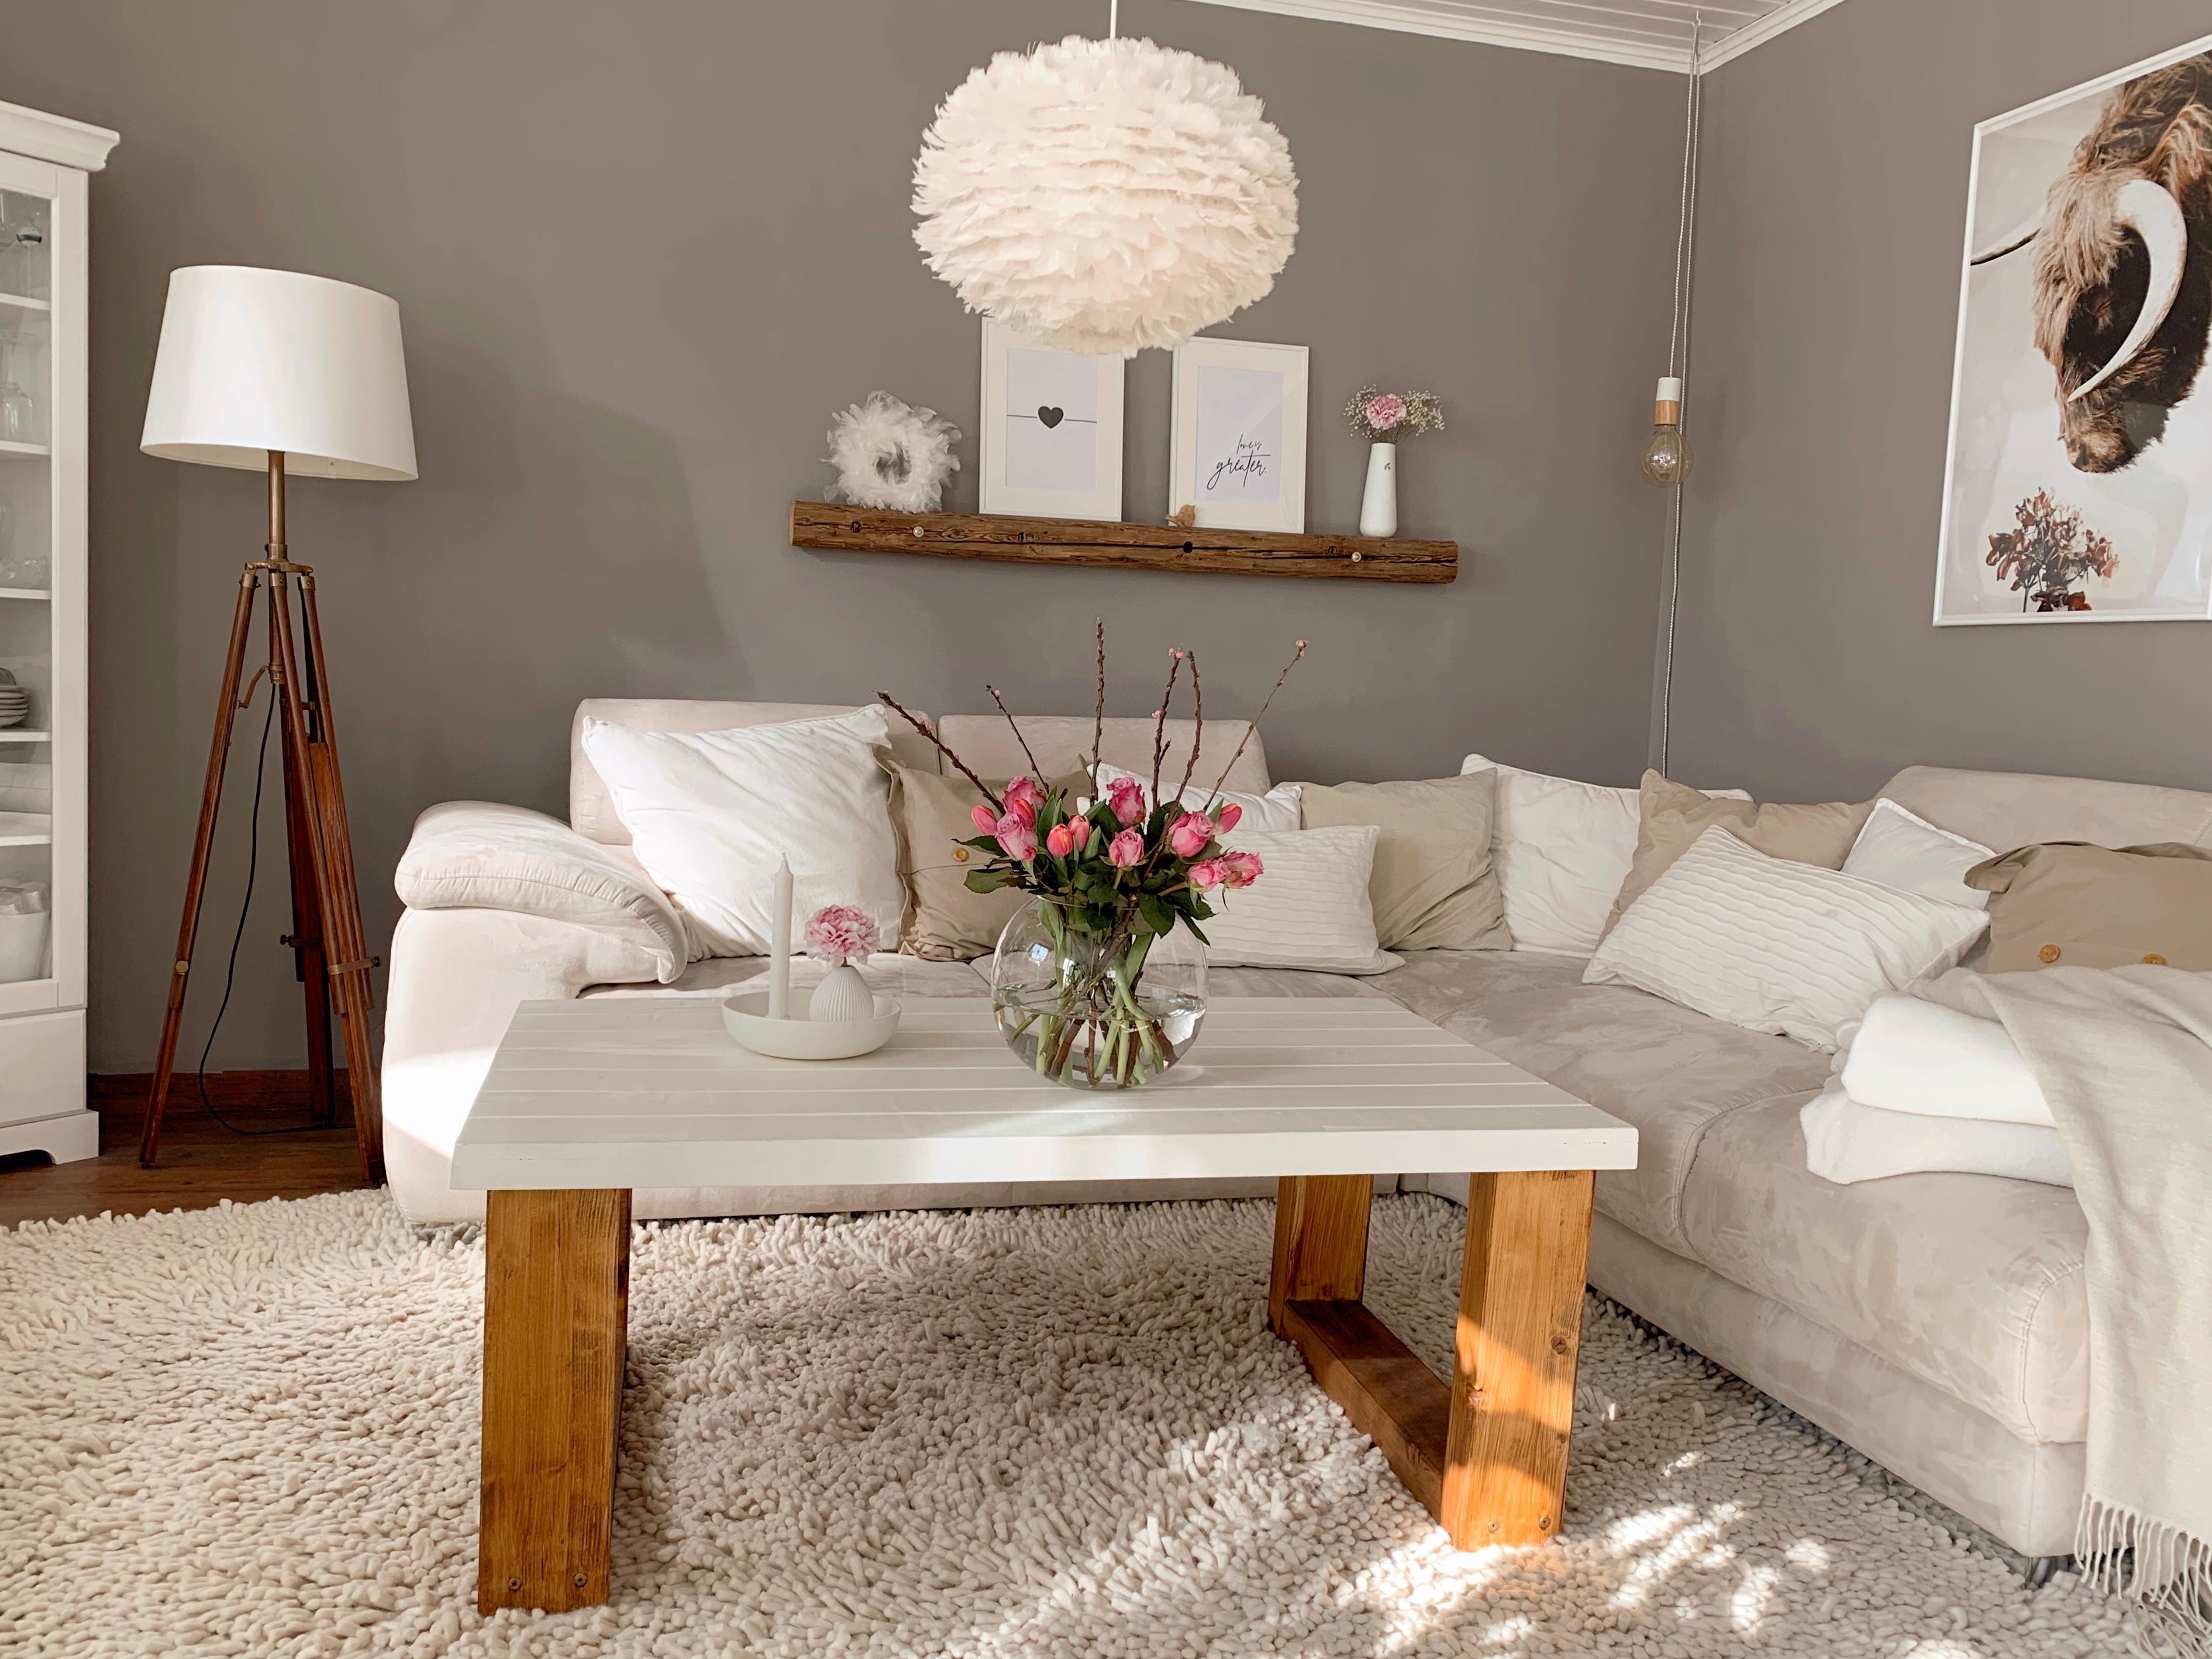 Unsere Kuschelecke #sofaecke#livingchallenge#couchstyle#wohnzimmer#interiorinspo#wohnidee#cozy